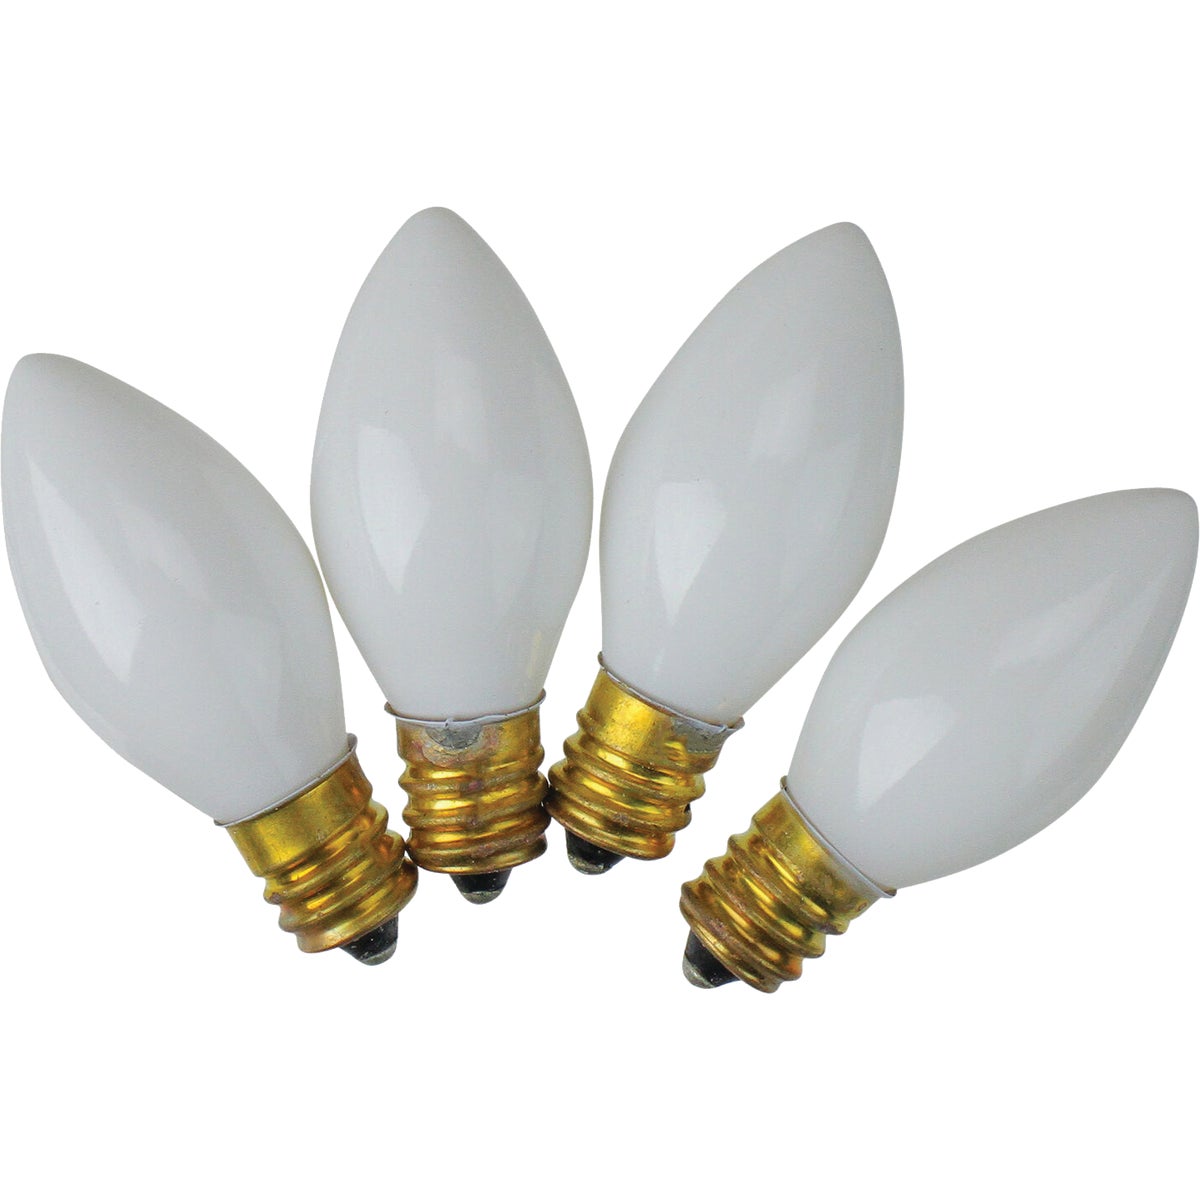 J Hofert C7 White Ceramic 125V Replacement Light Bulb (4-Pack)